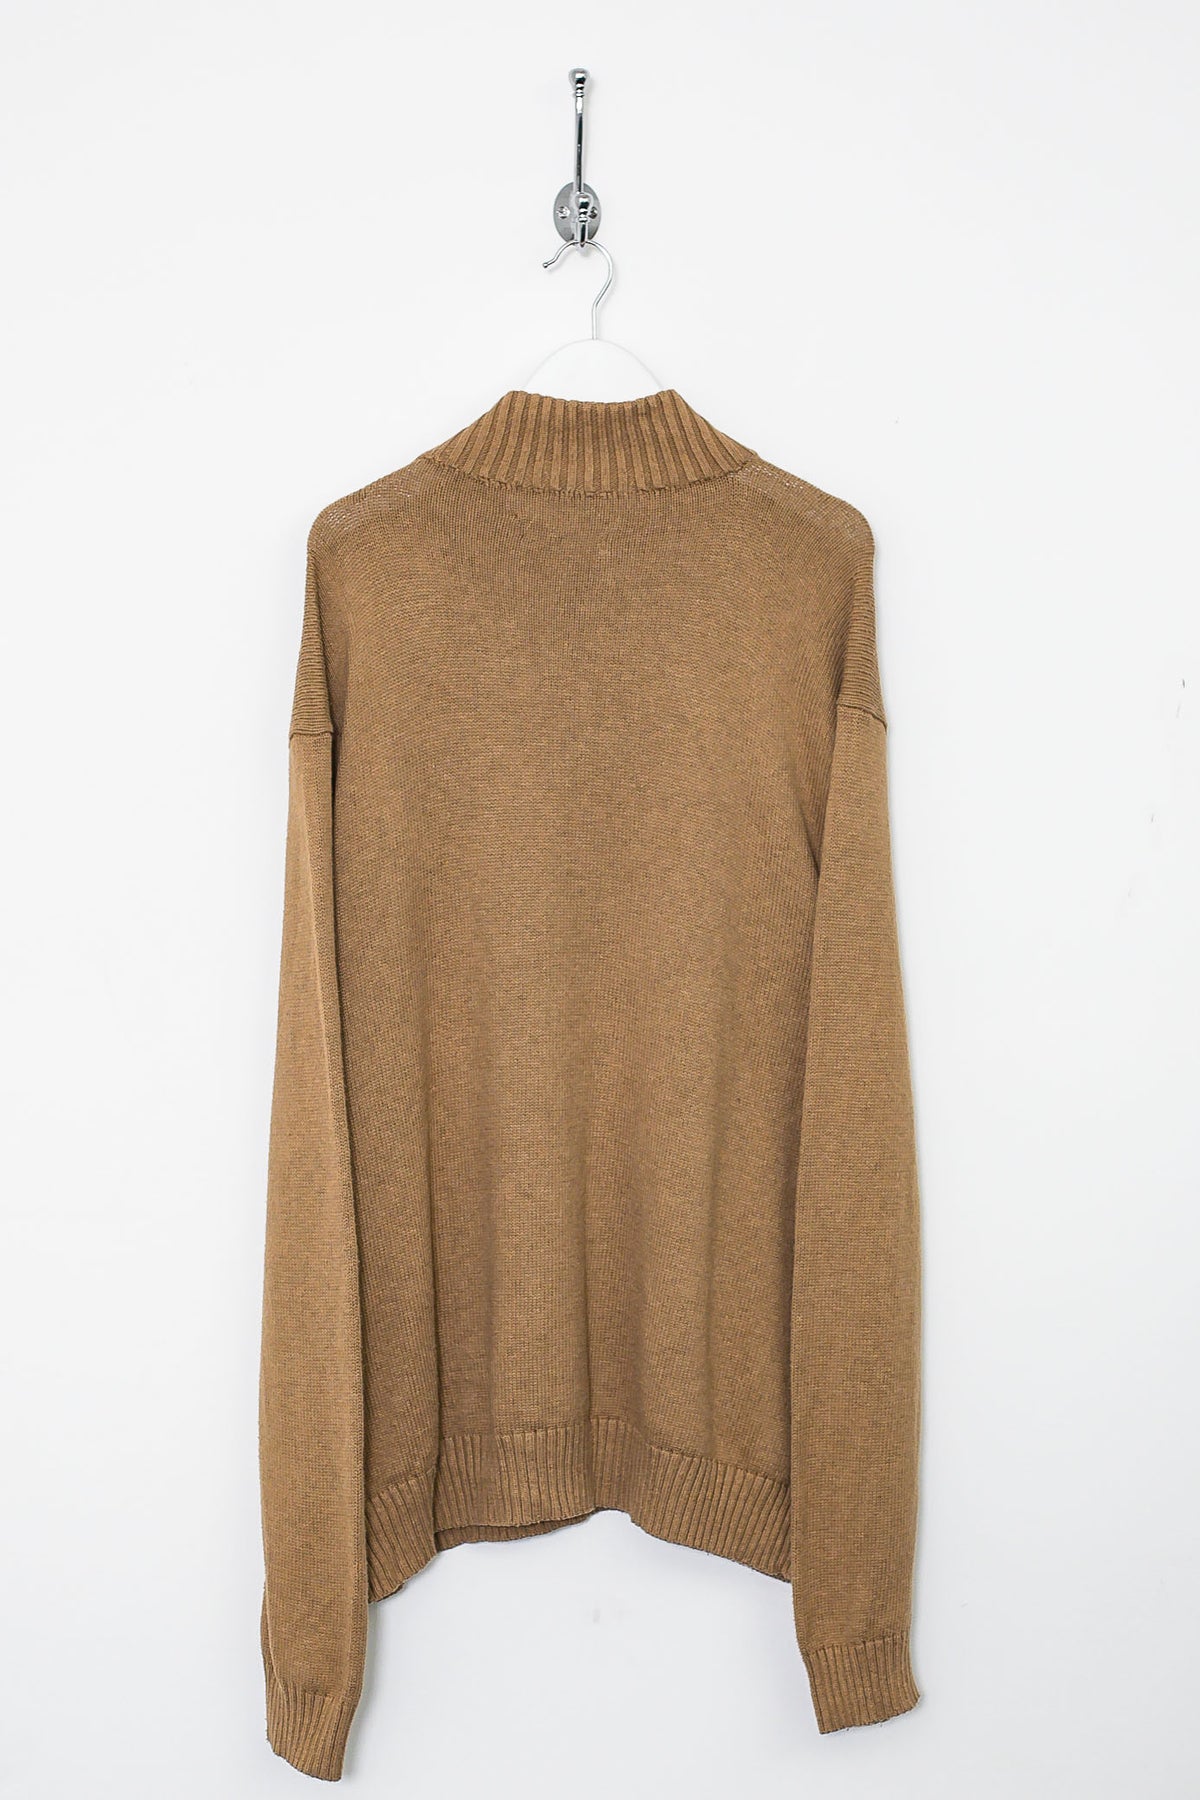 00s Ralph Lauren 1/4 Zip Knit Sweatshirt (XXL)